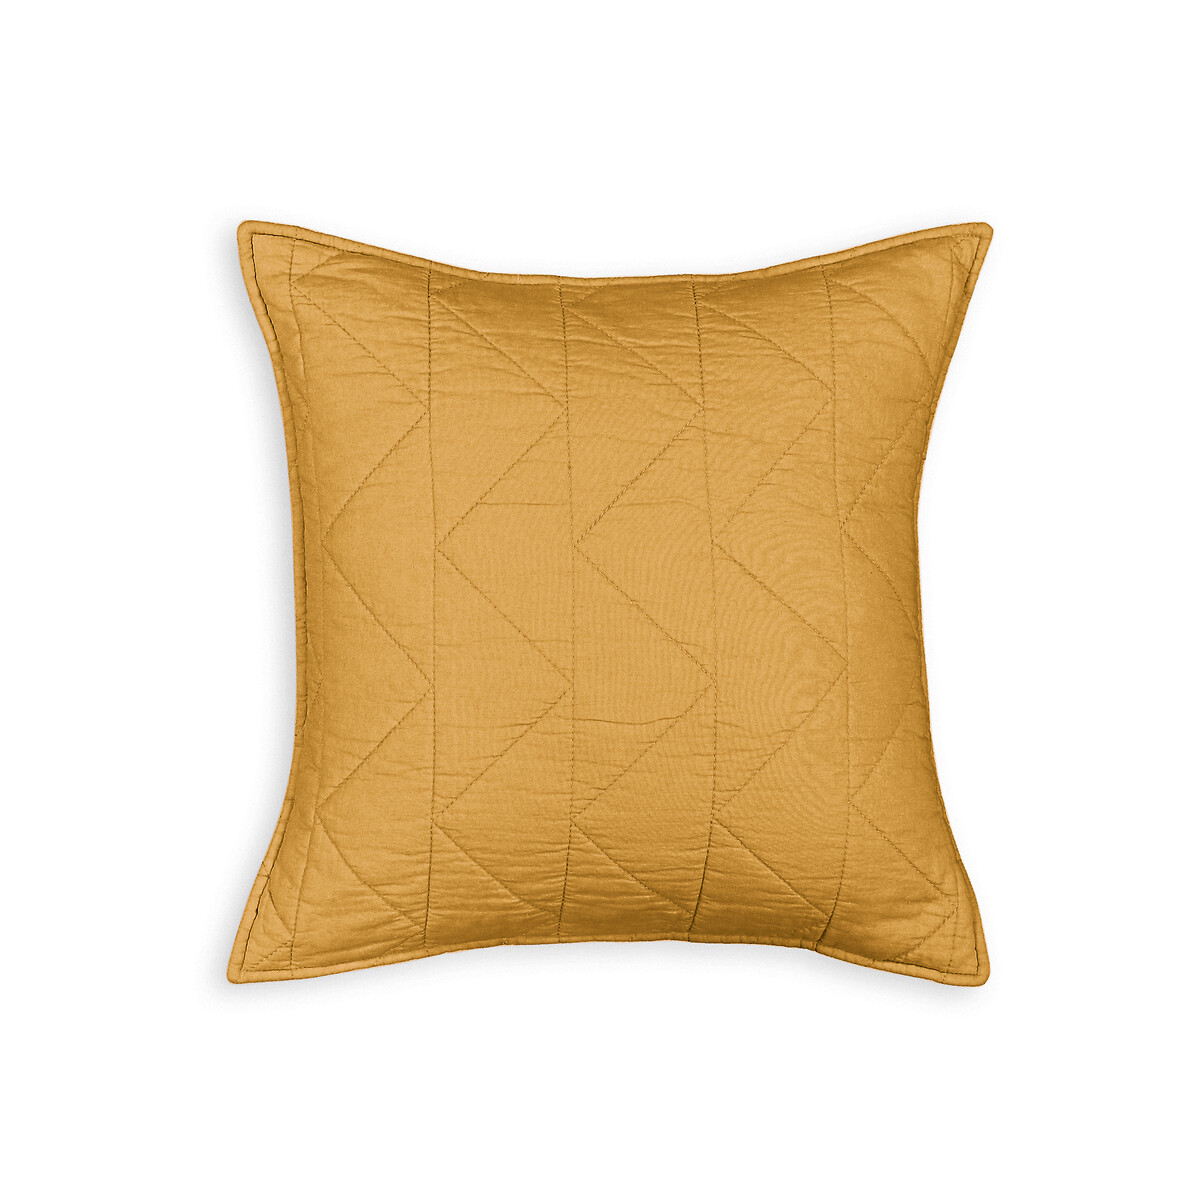 Чехол La Redoute На подушку  наволочка Zig-zag 65 x 65 см желтый, размер 65 x 65 см - фото 3